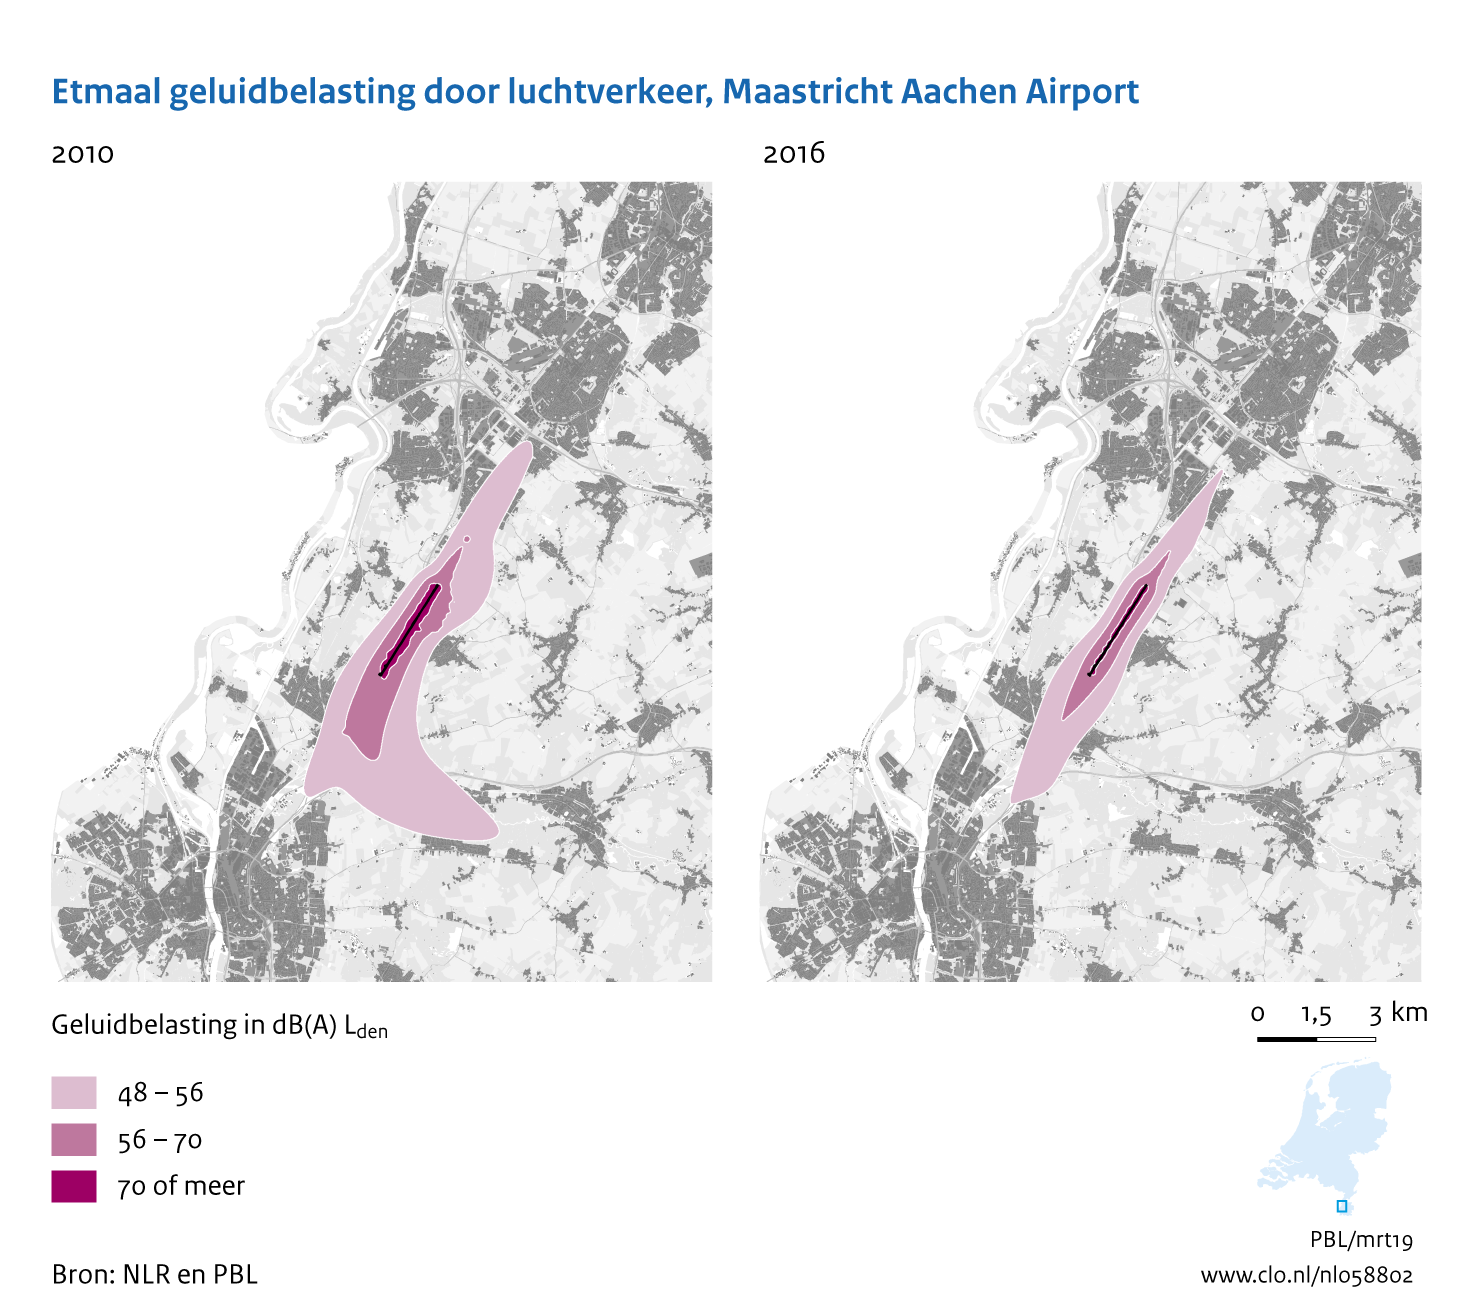 Figuur Etmaal geluidbelasting door luchtvaart, Maastricht Aachen Airport, 2010-2016. In de rest van de tekst wordt deze figuur uitgebreider uitgelegd.